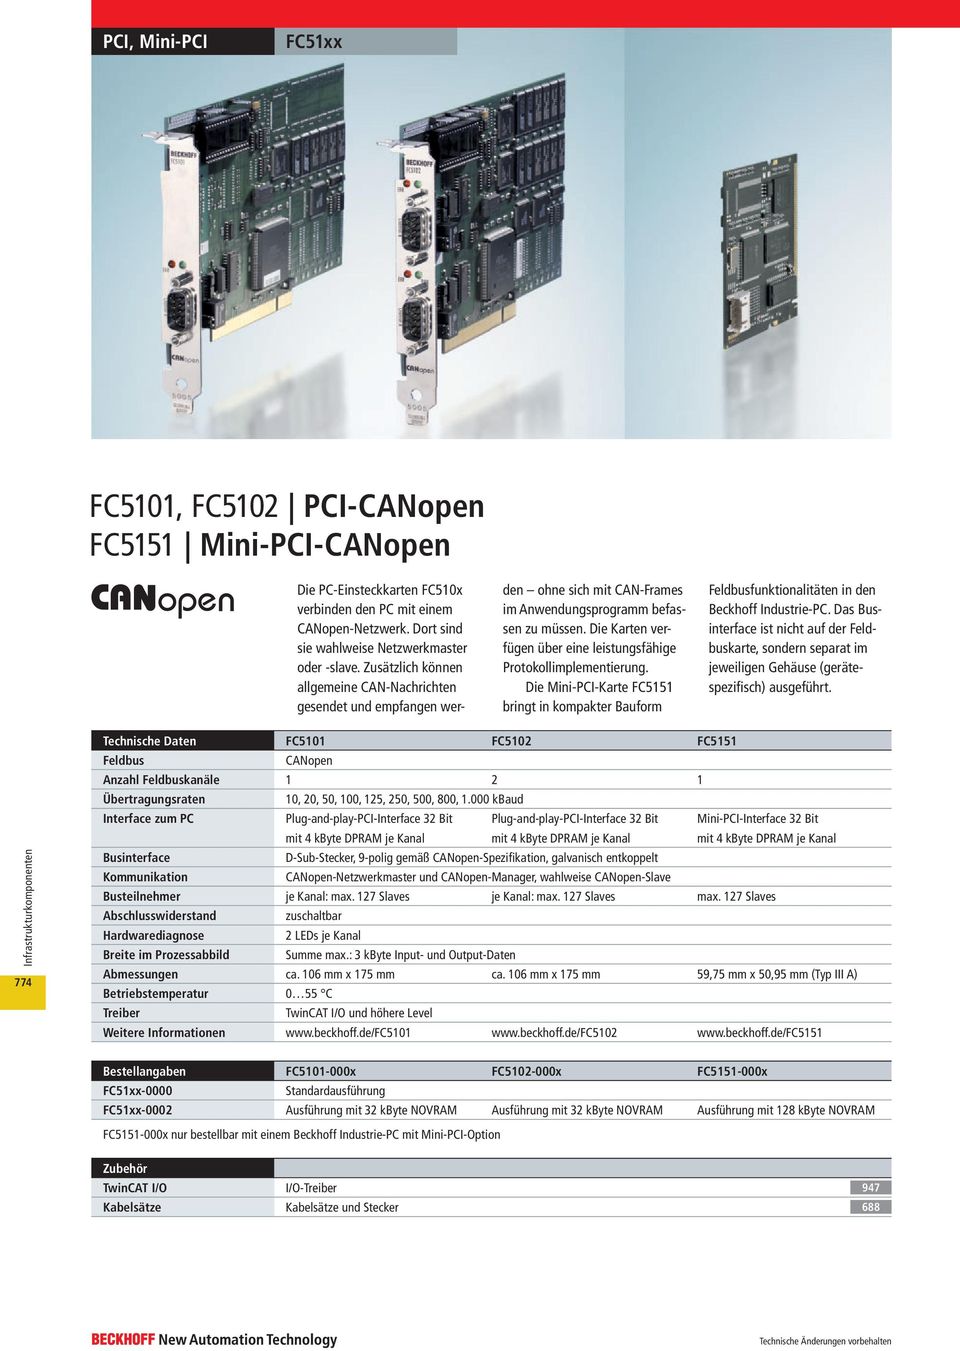 Die Karten verfügen über eine leistungsfähige Protokoll implementierung. Die Mini-PCI-Karte FC5151 bringt in kompakter Bauform Feldbusfunktionalitäten in den Beckhoff Industrie-PC.